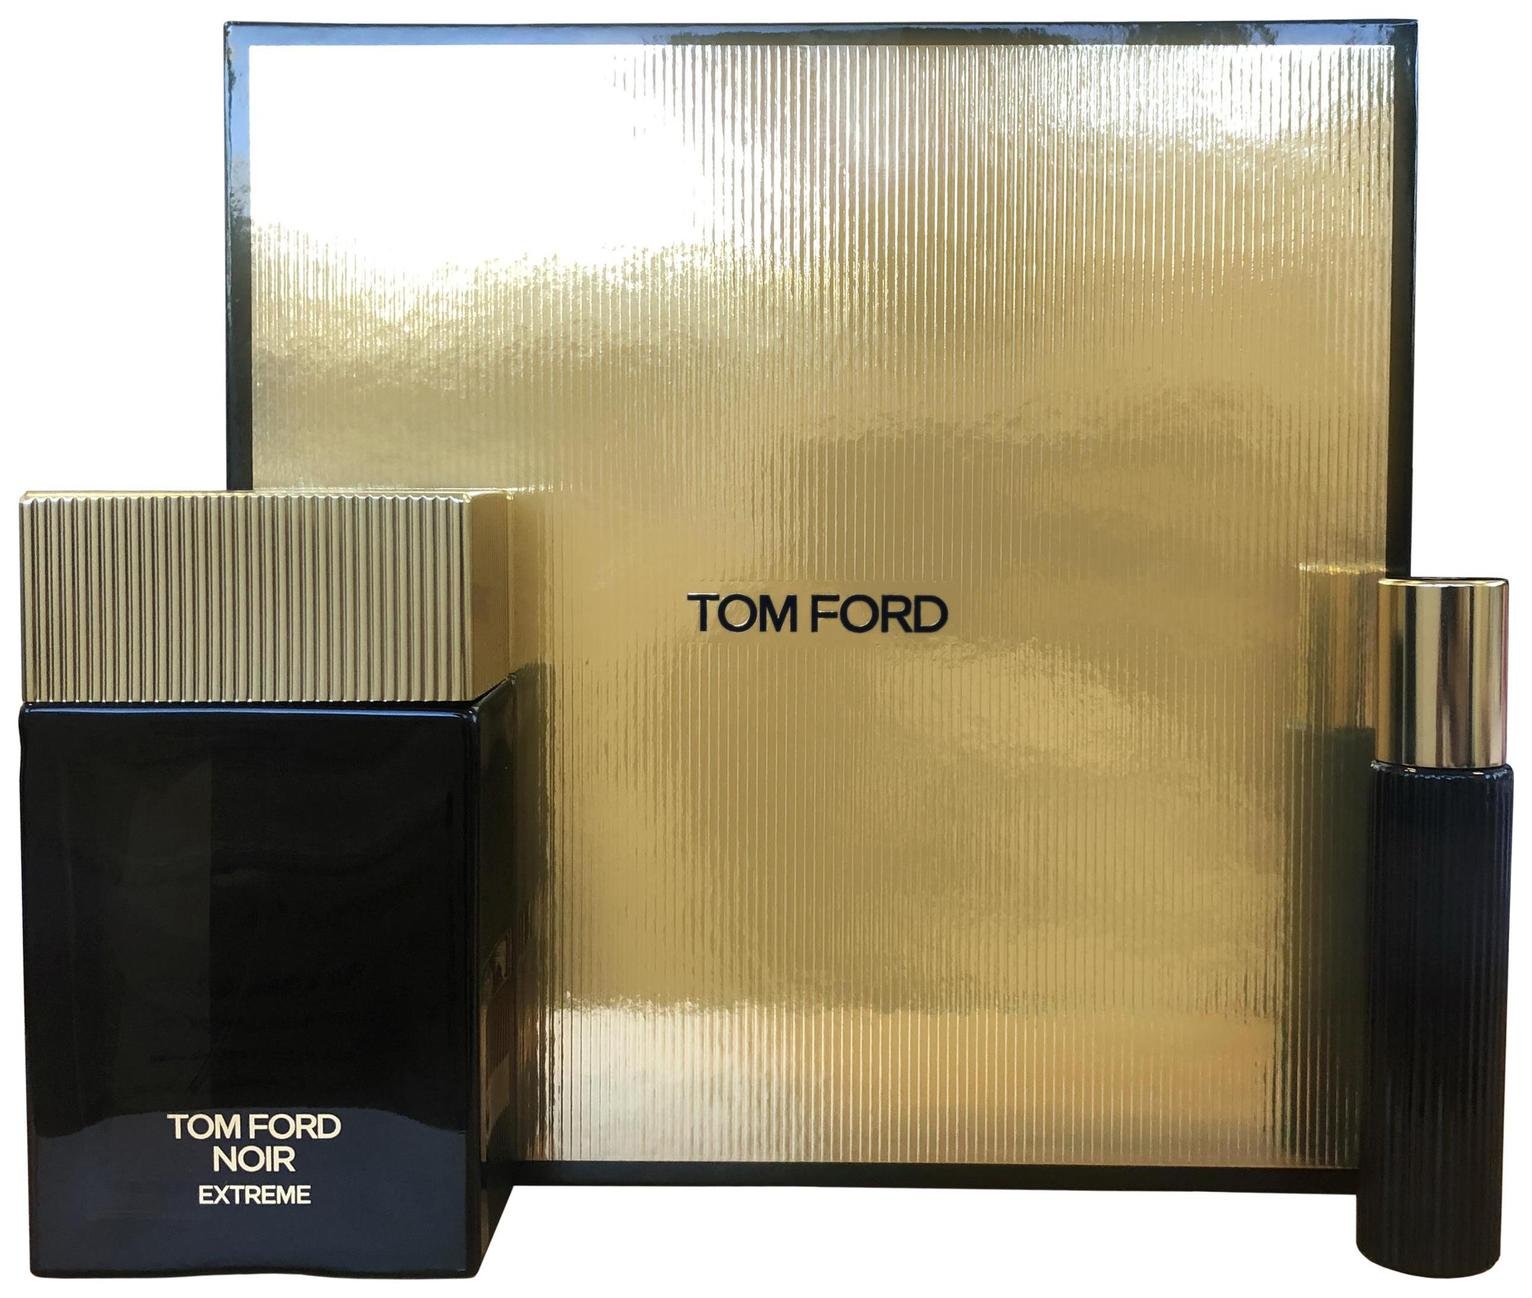 Tom Ford Noir Extreme Eau de Perfum Giftset - 100ml (8835923) | Argos Price  Tracker 